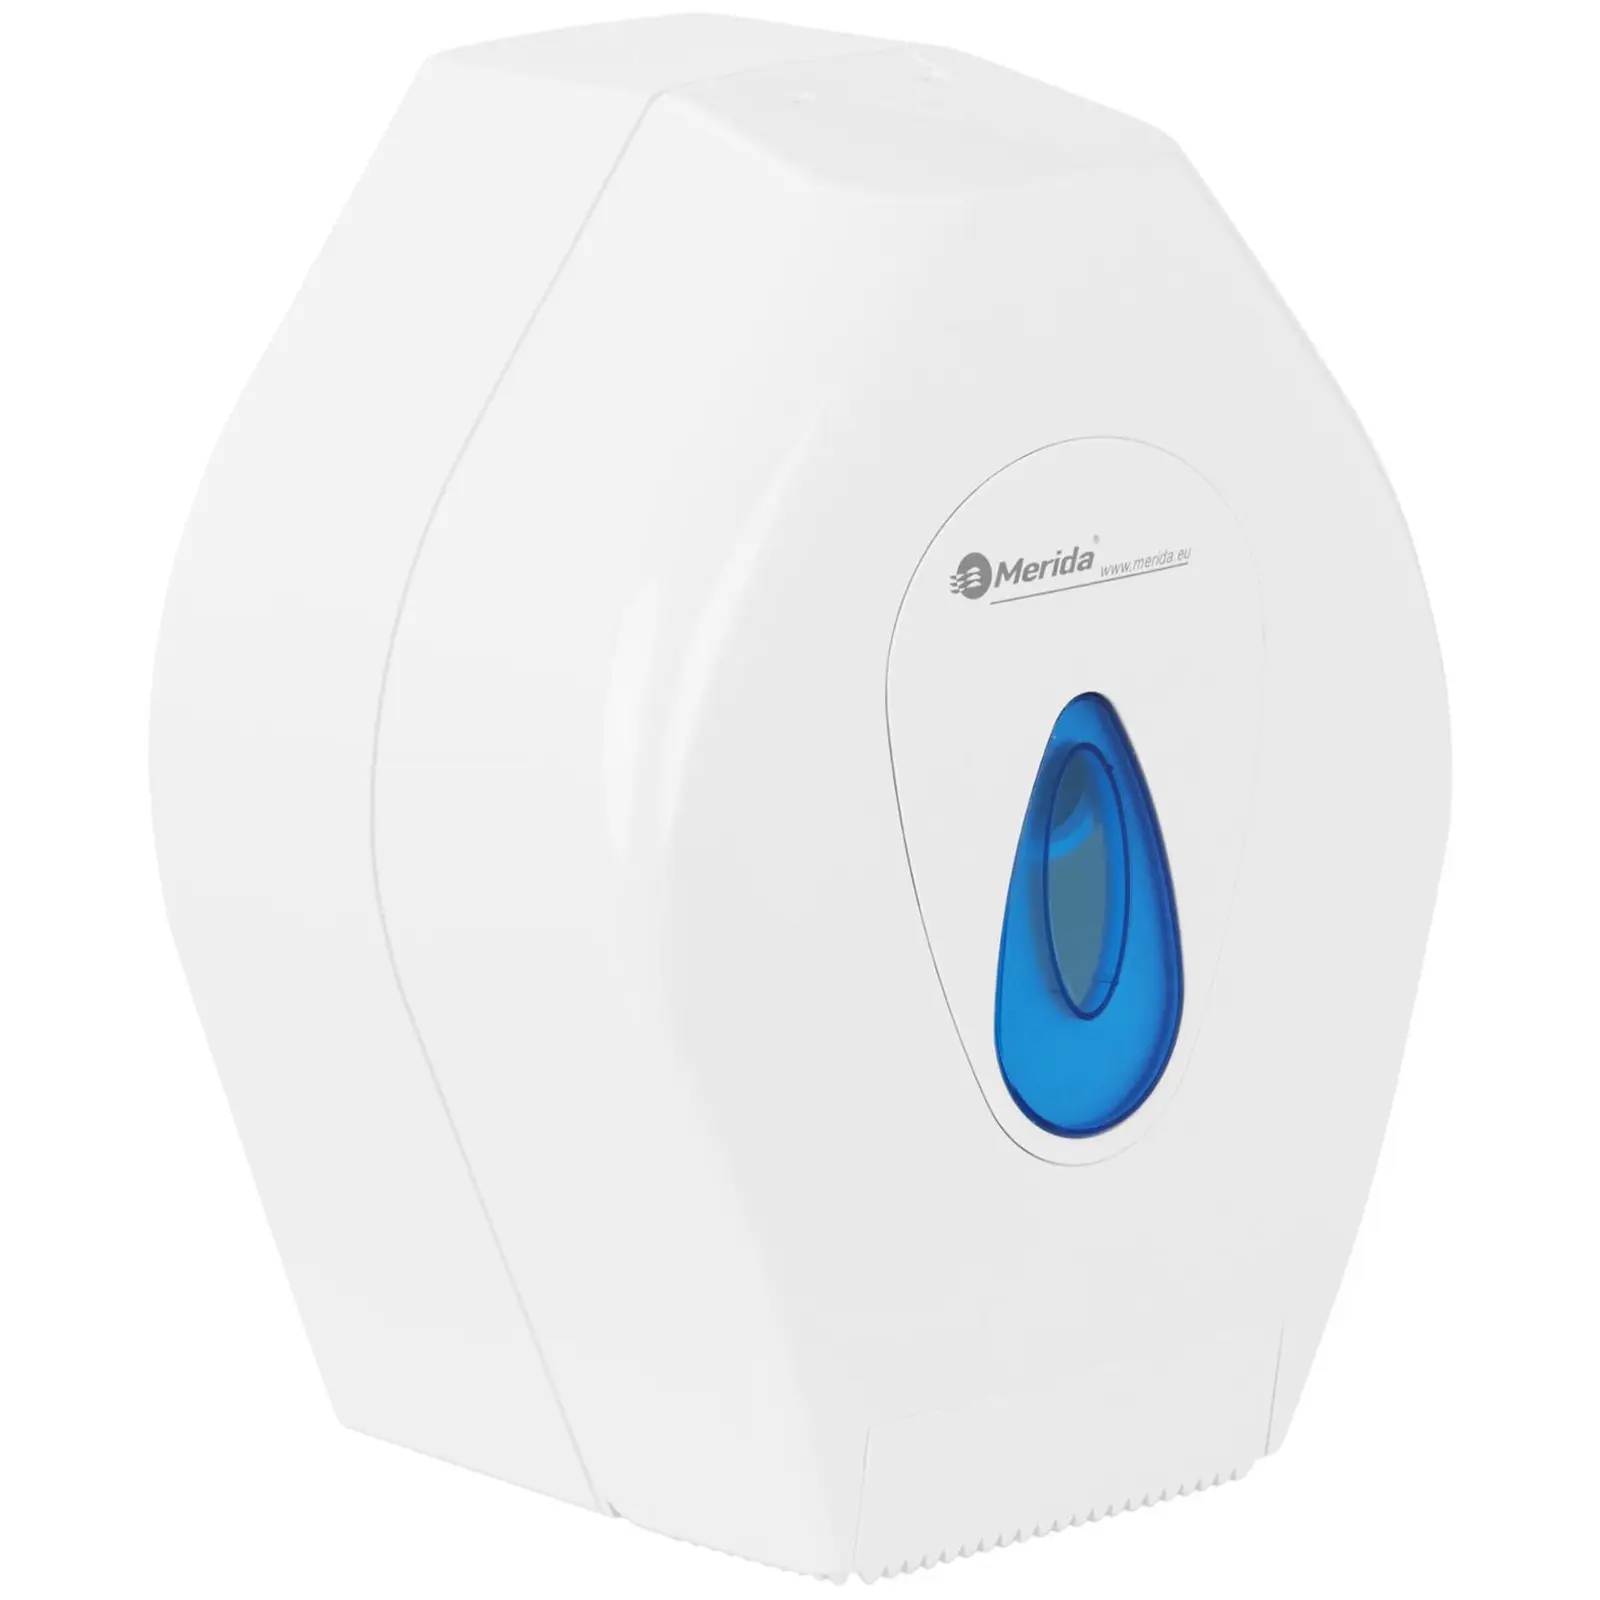 Toilettenpapierspender - Rollendurchmesser 19 cm - Wandmontage - weiß